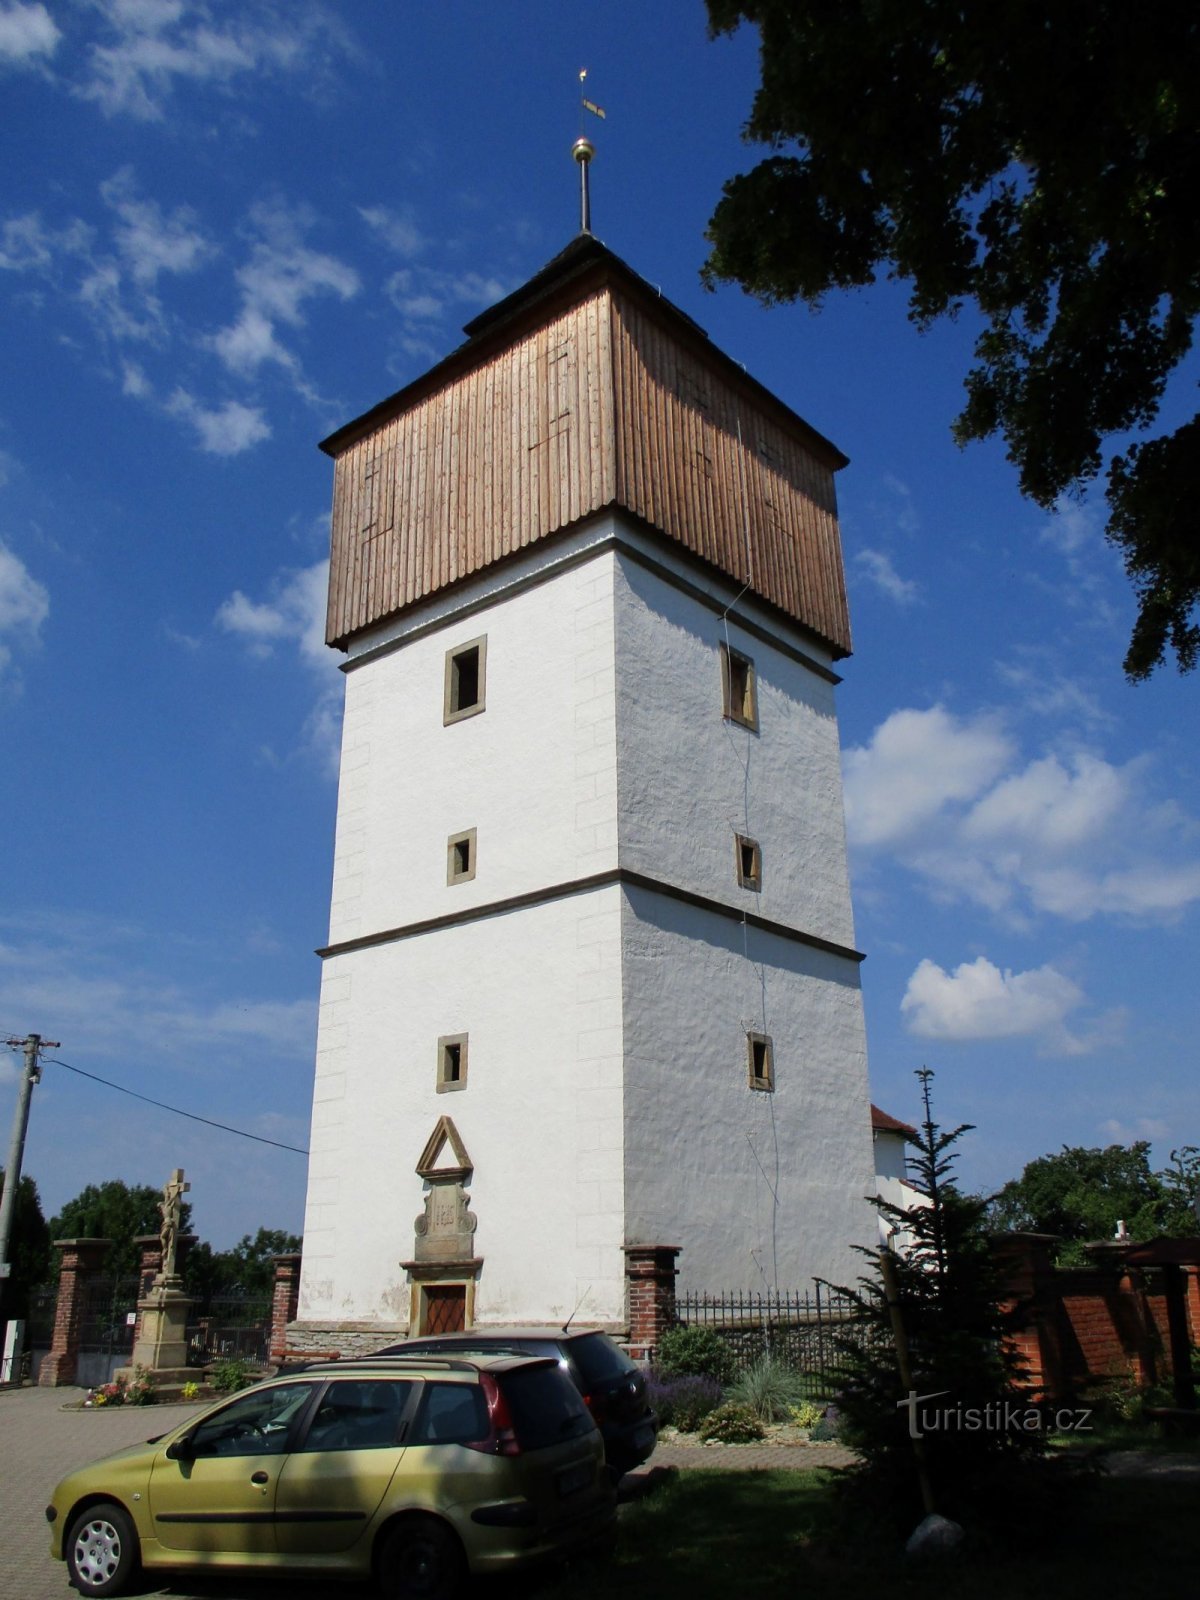 钟楼（Černčice，19.6.2019/XNUMX/XNUMX）